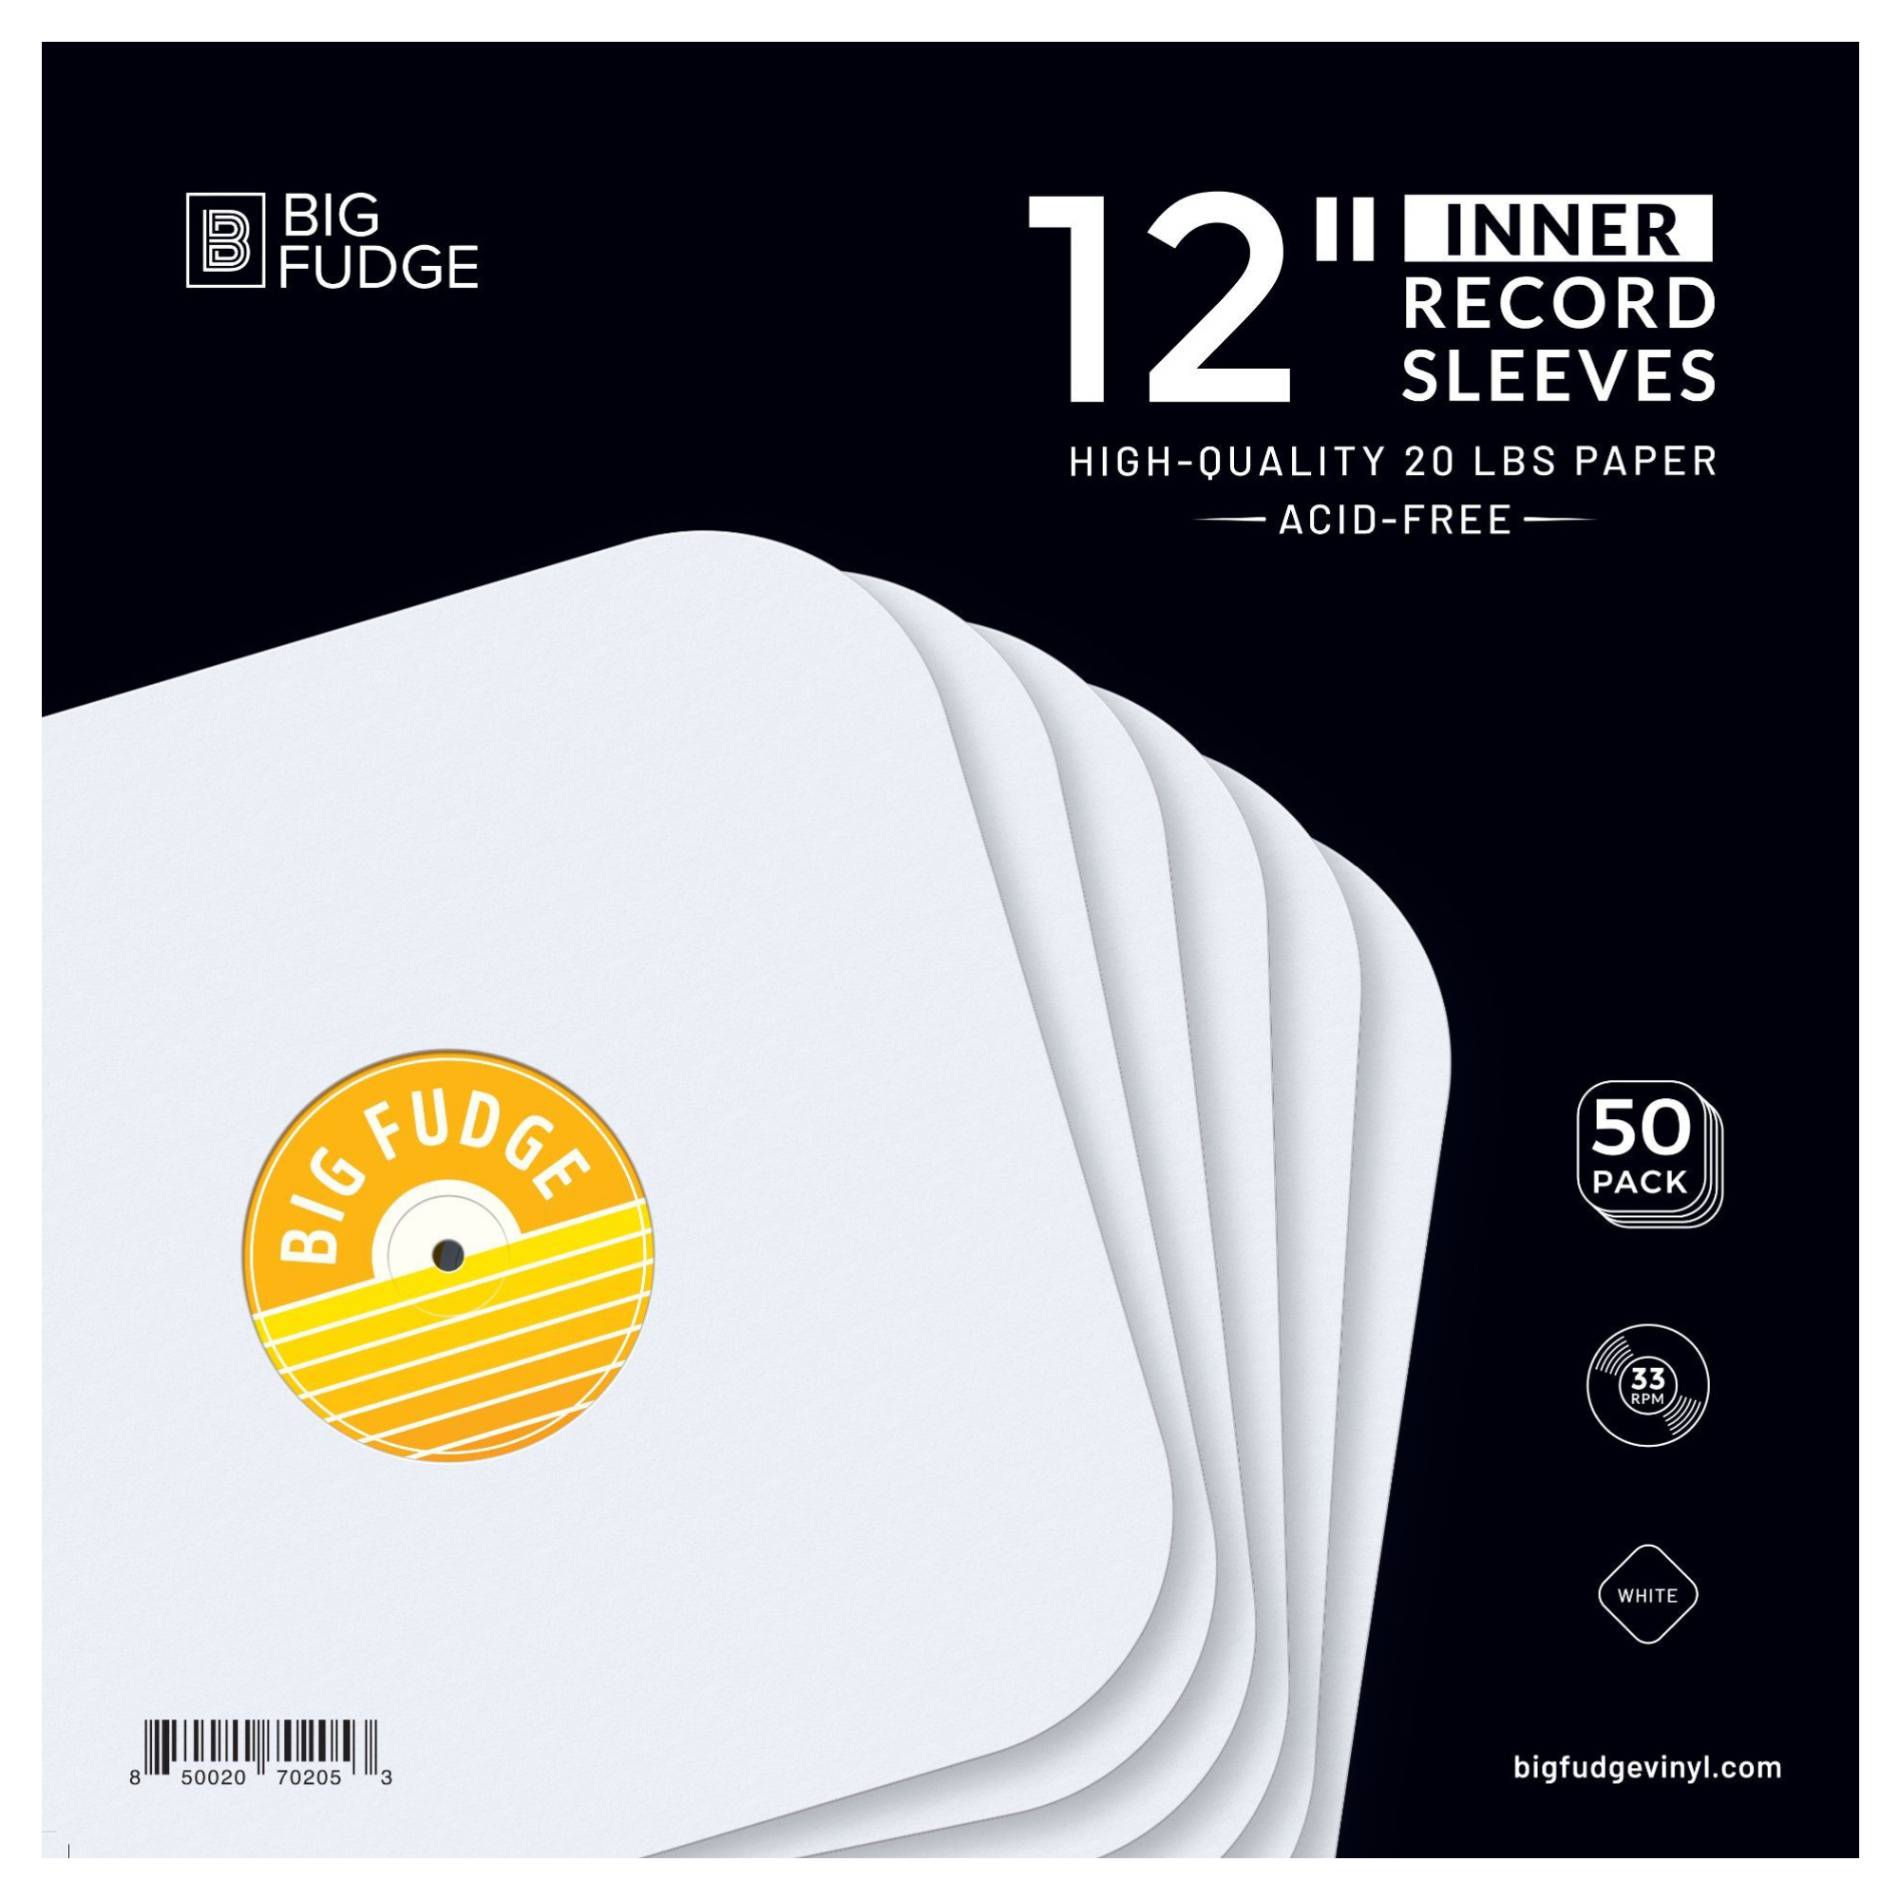 100 LP Vinyl Record Inner Sleeves Heavy Stock Ivory White Paper 12 33 RPM  659257818335